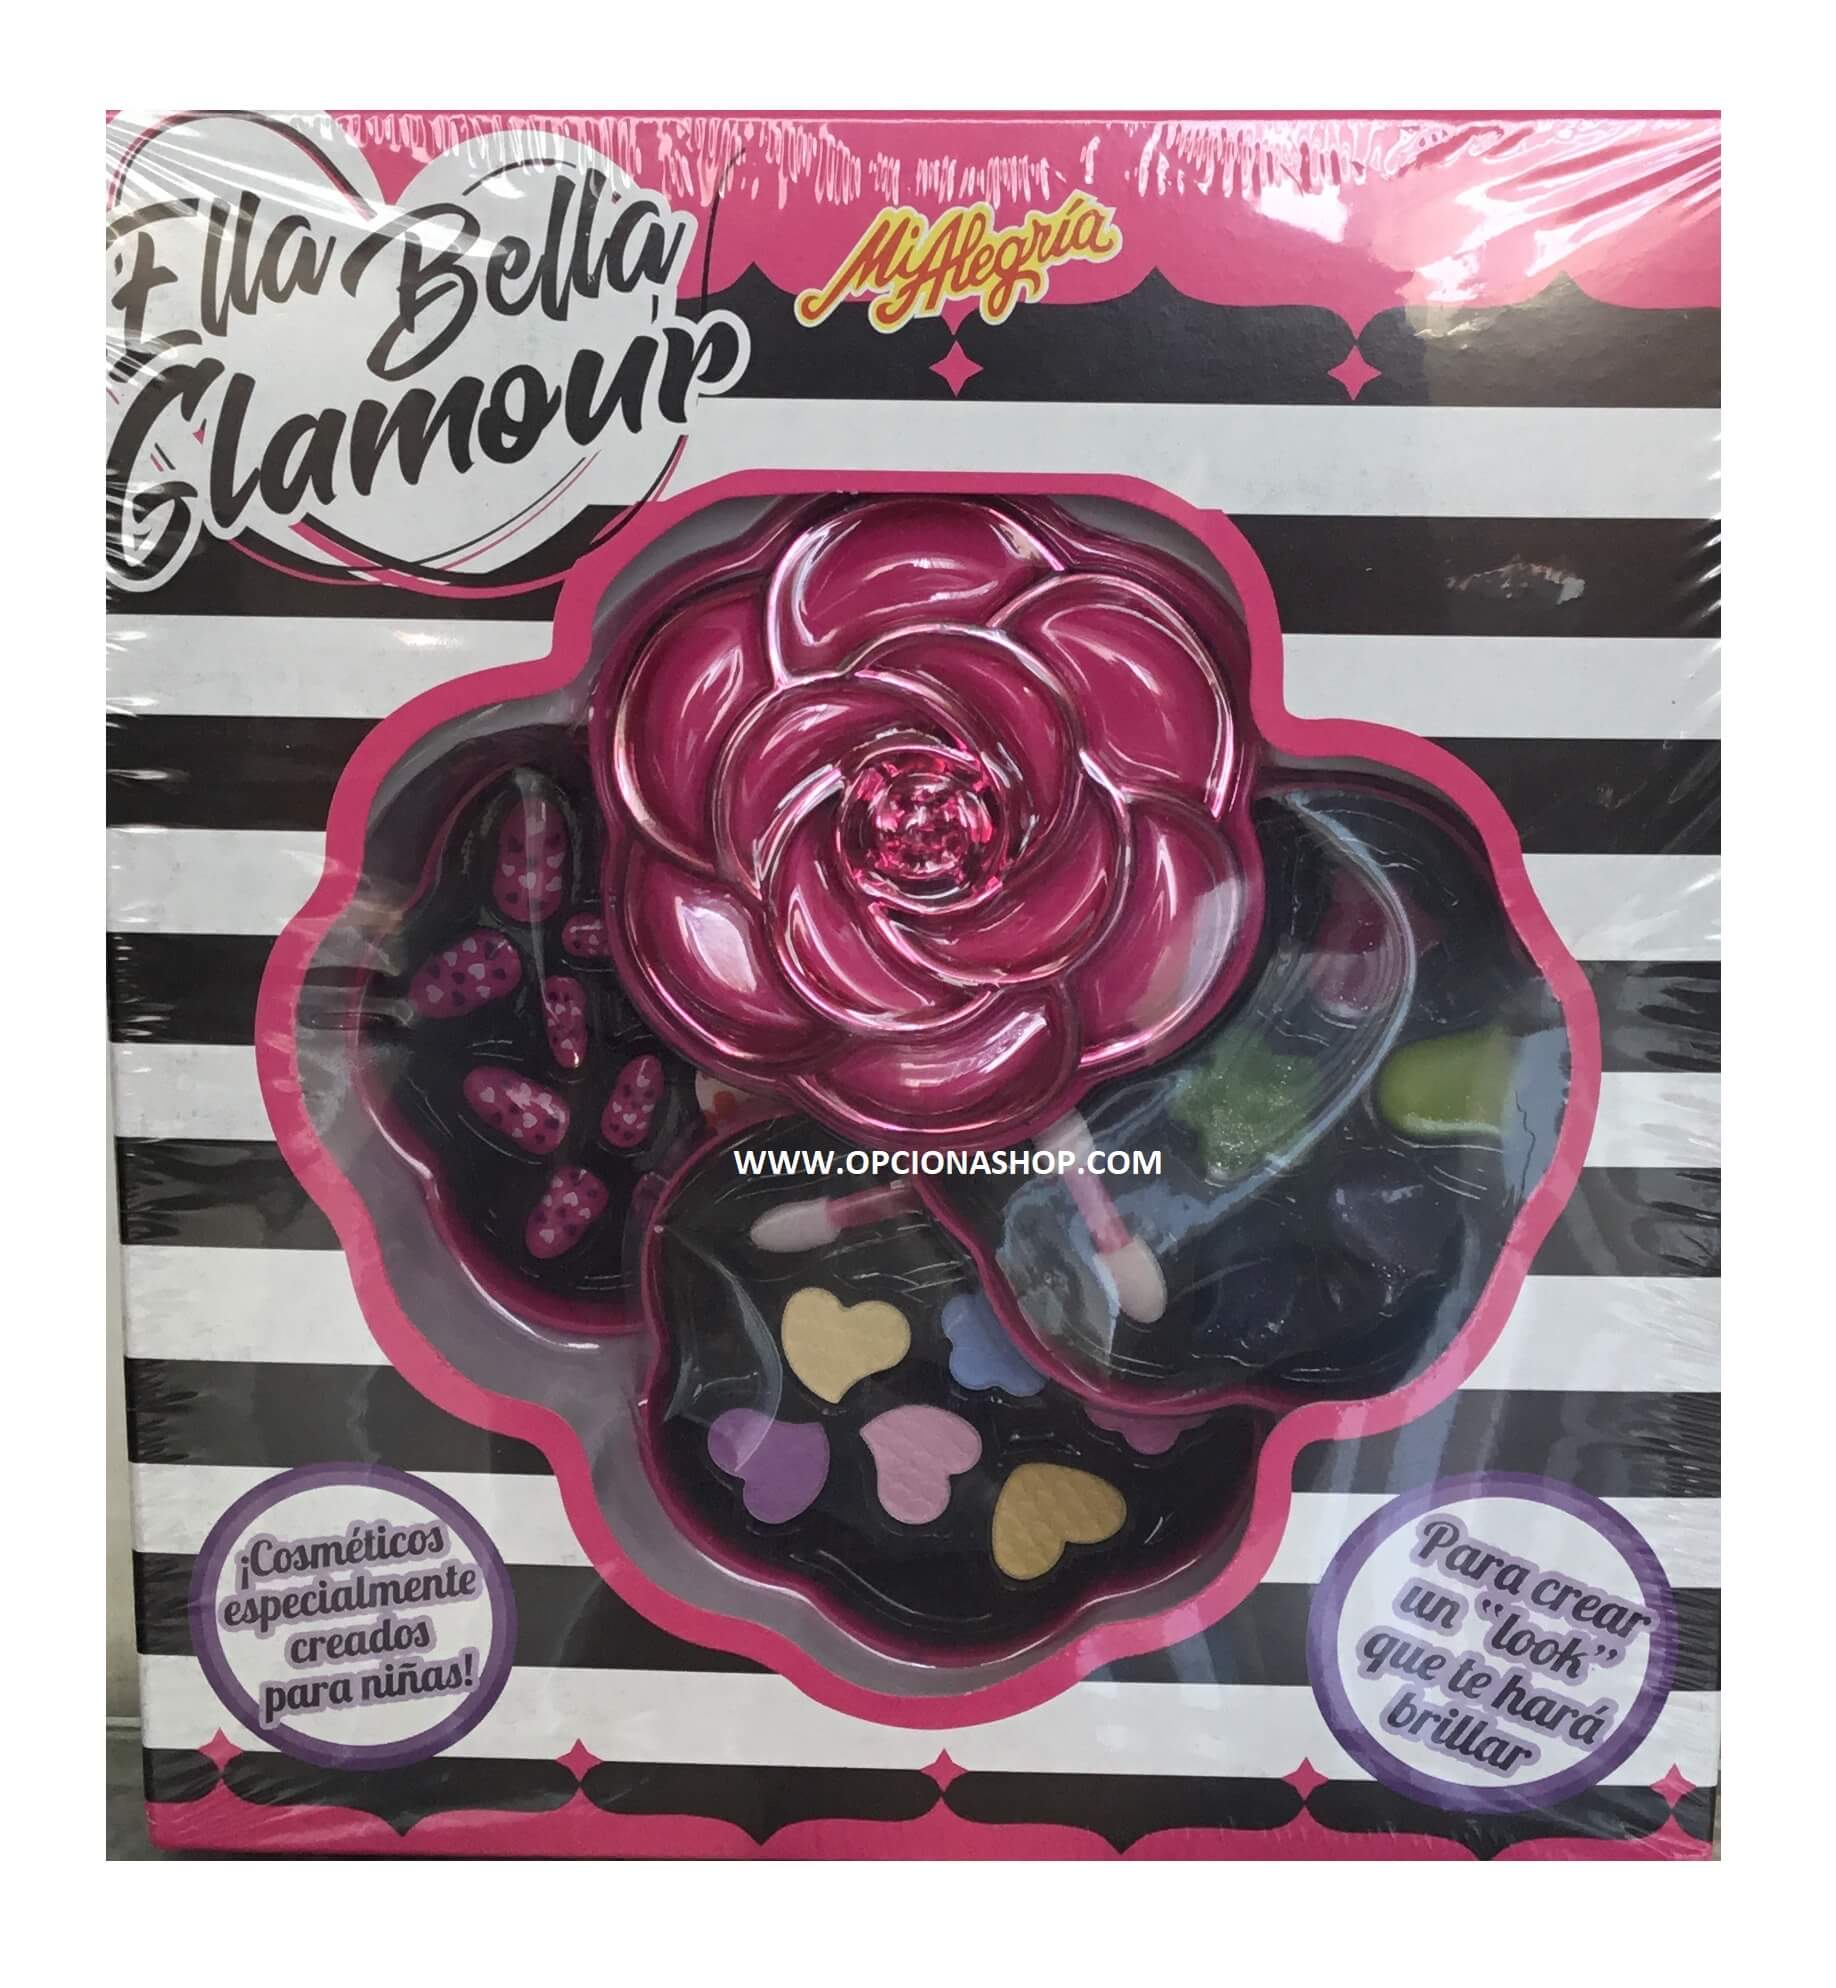 Ella Bella Glamour set de maquillaje de Mi Alegría - Opción A shop